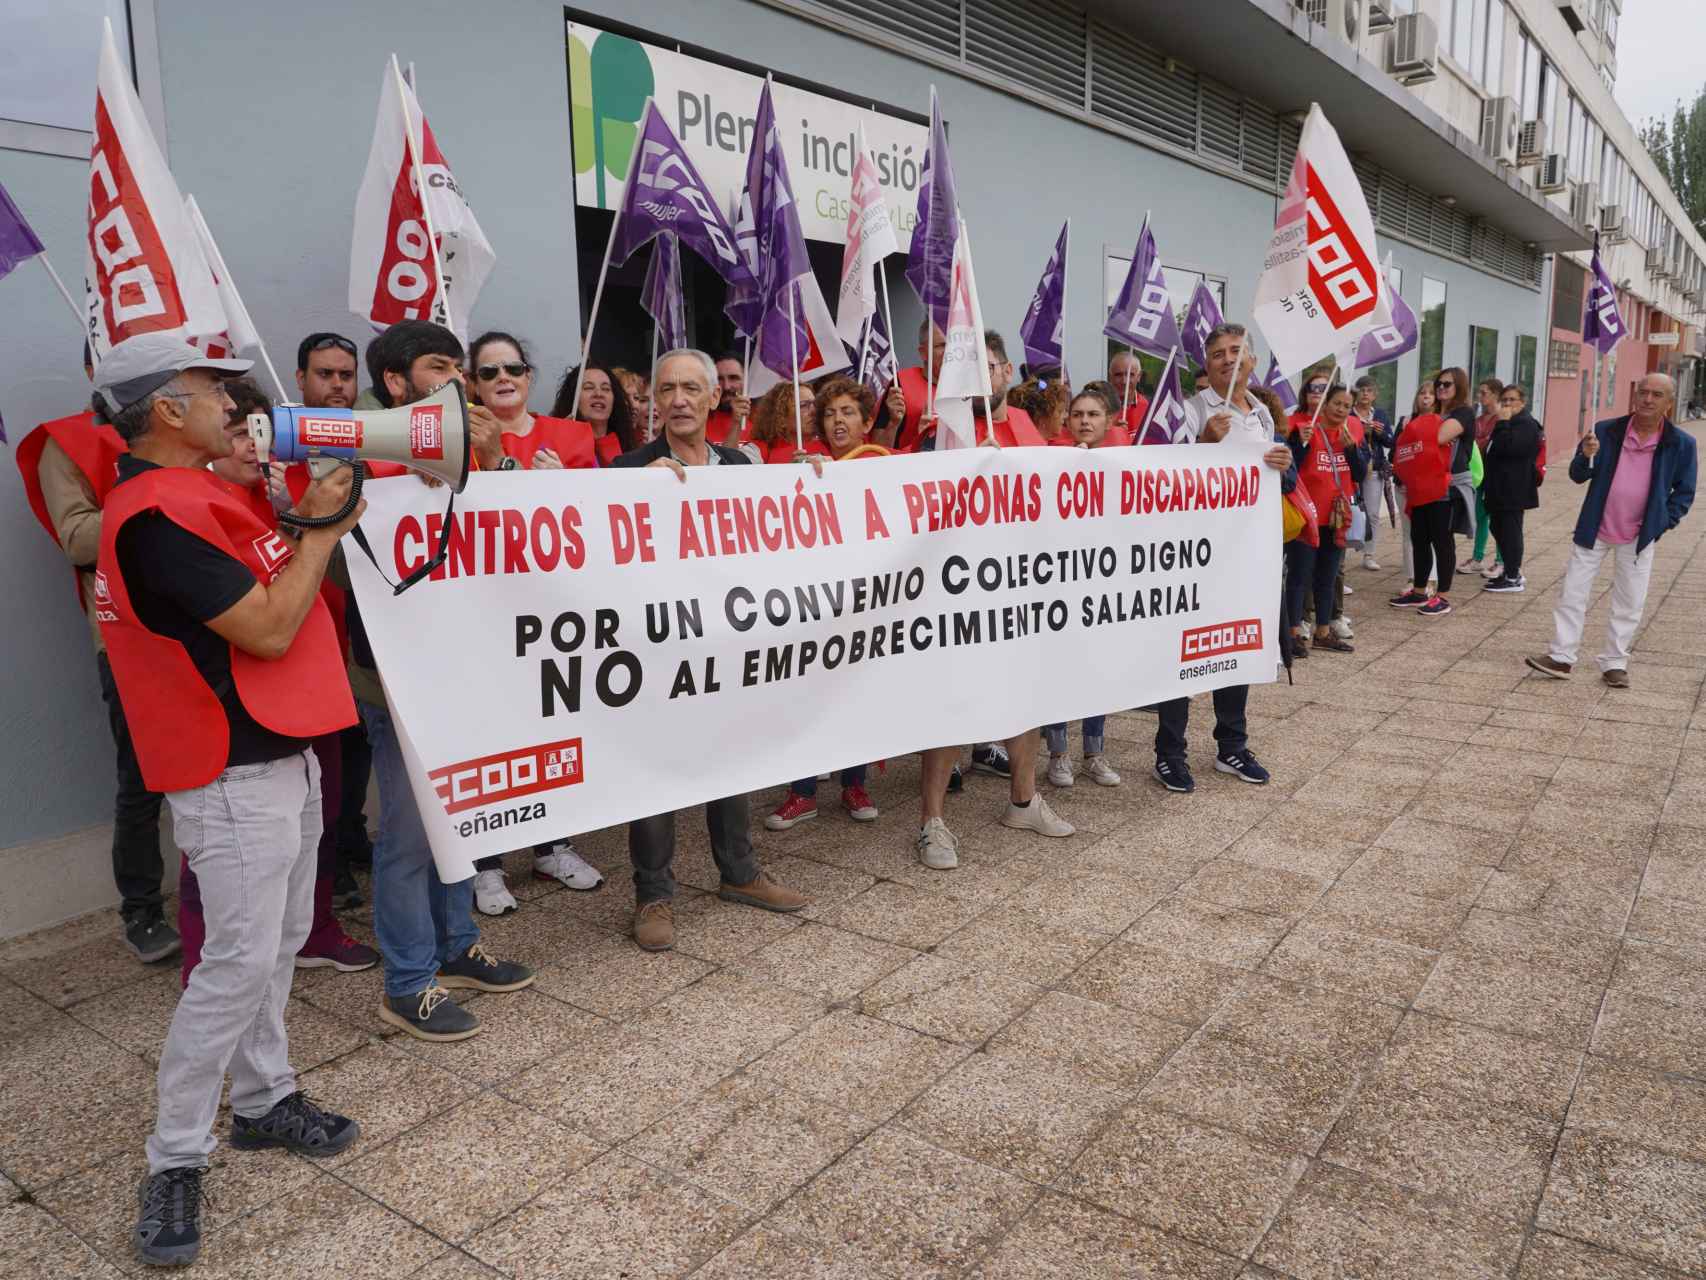 CCOO se concentra ante la sede Plena Inclusión Castilla y León por el bloqueo de la negociación del convenio de atención a las personas con discapacidad.